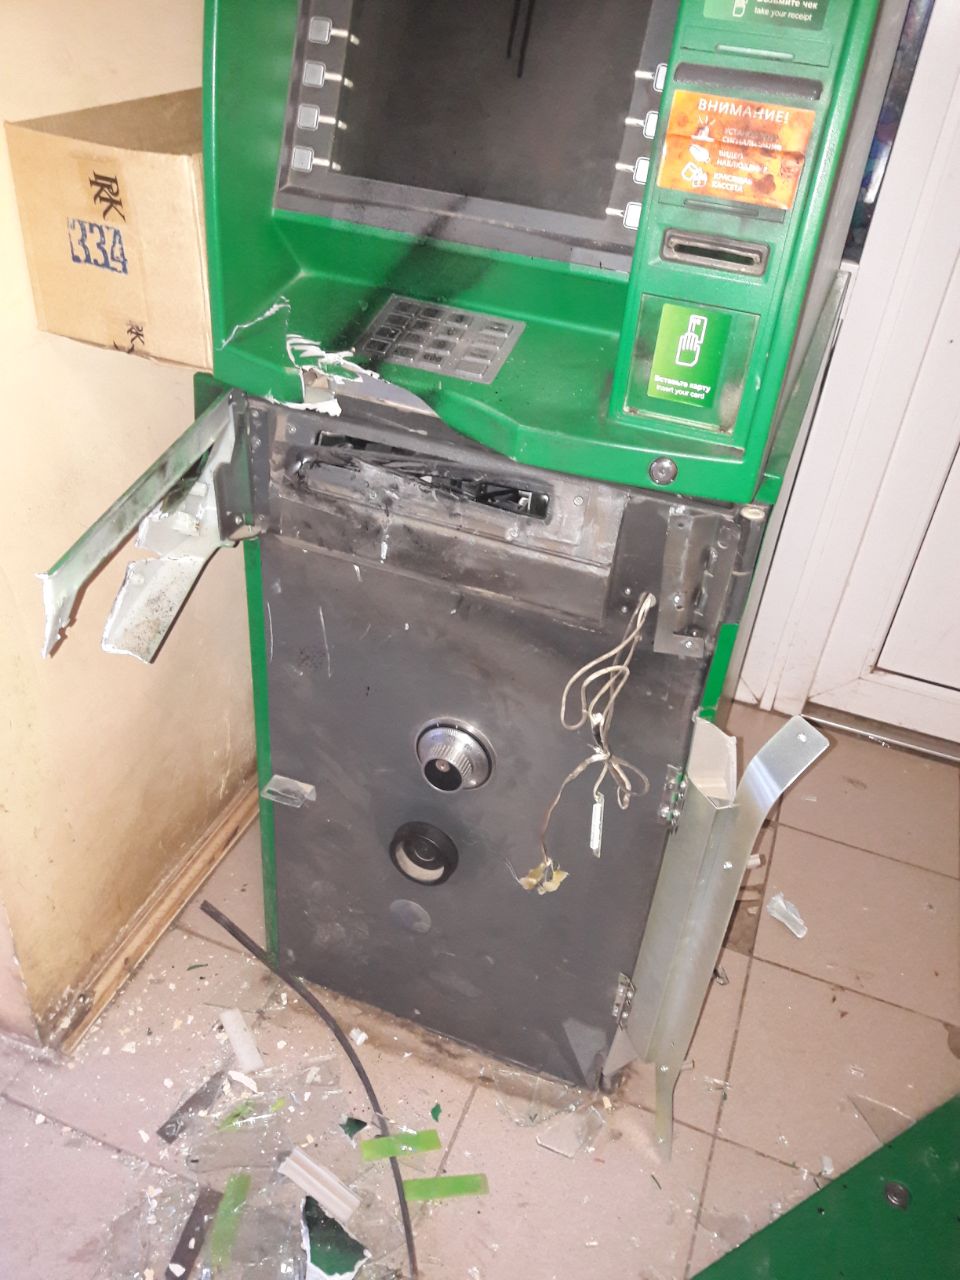 Сбербанк банкоматы старый